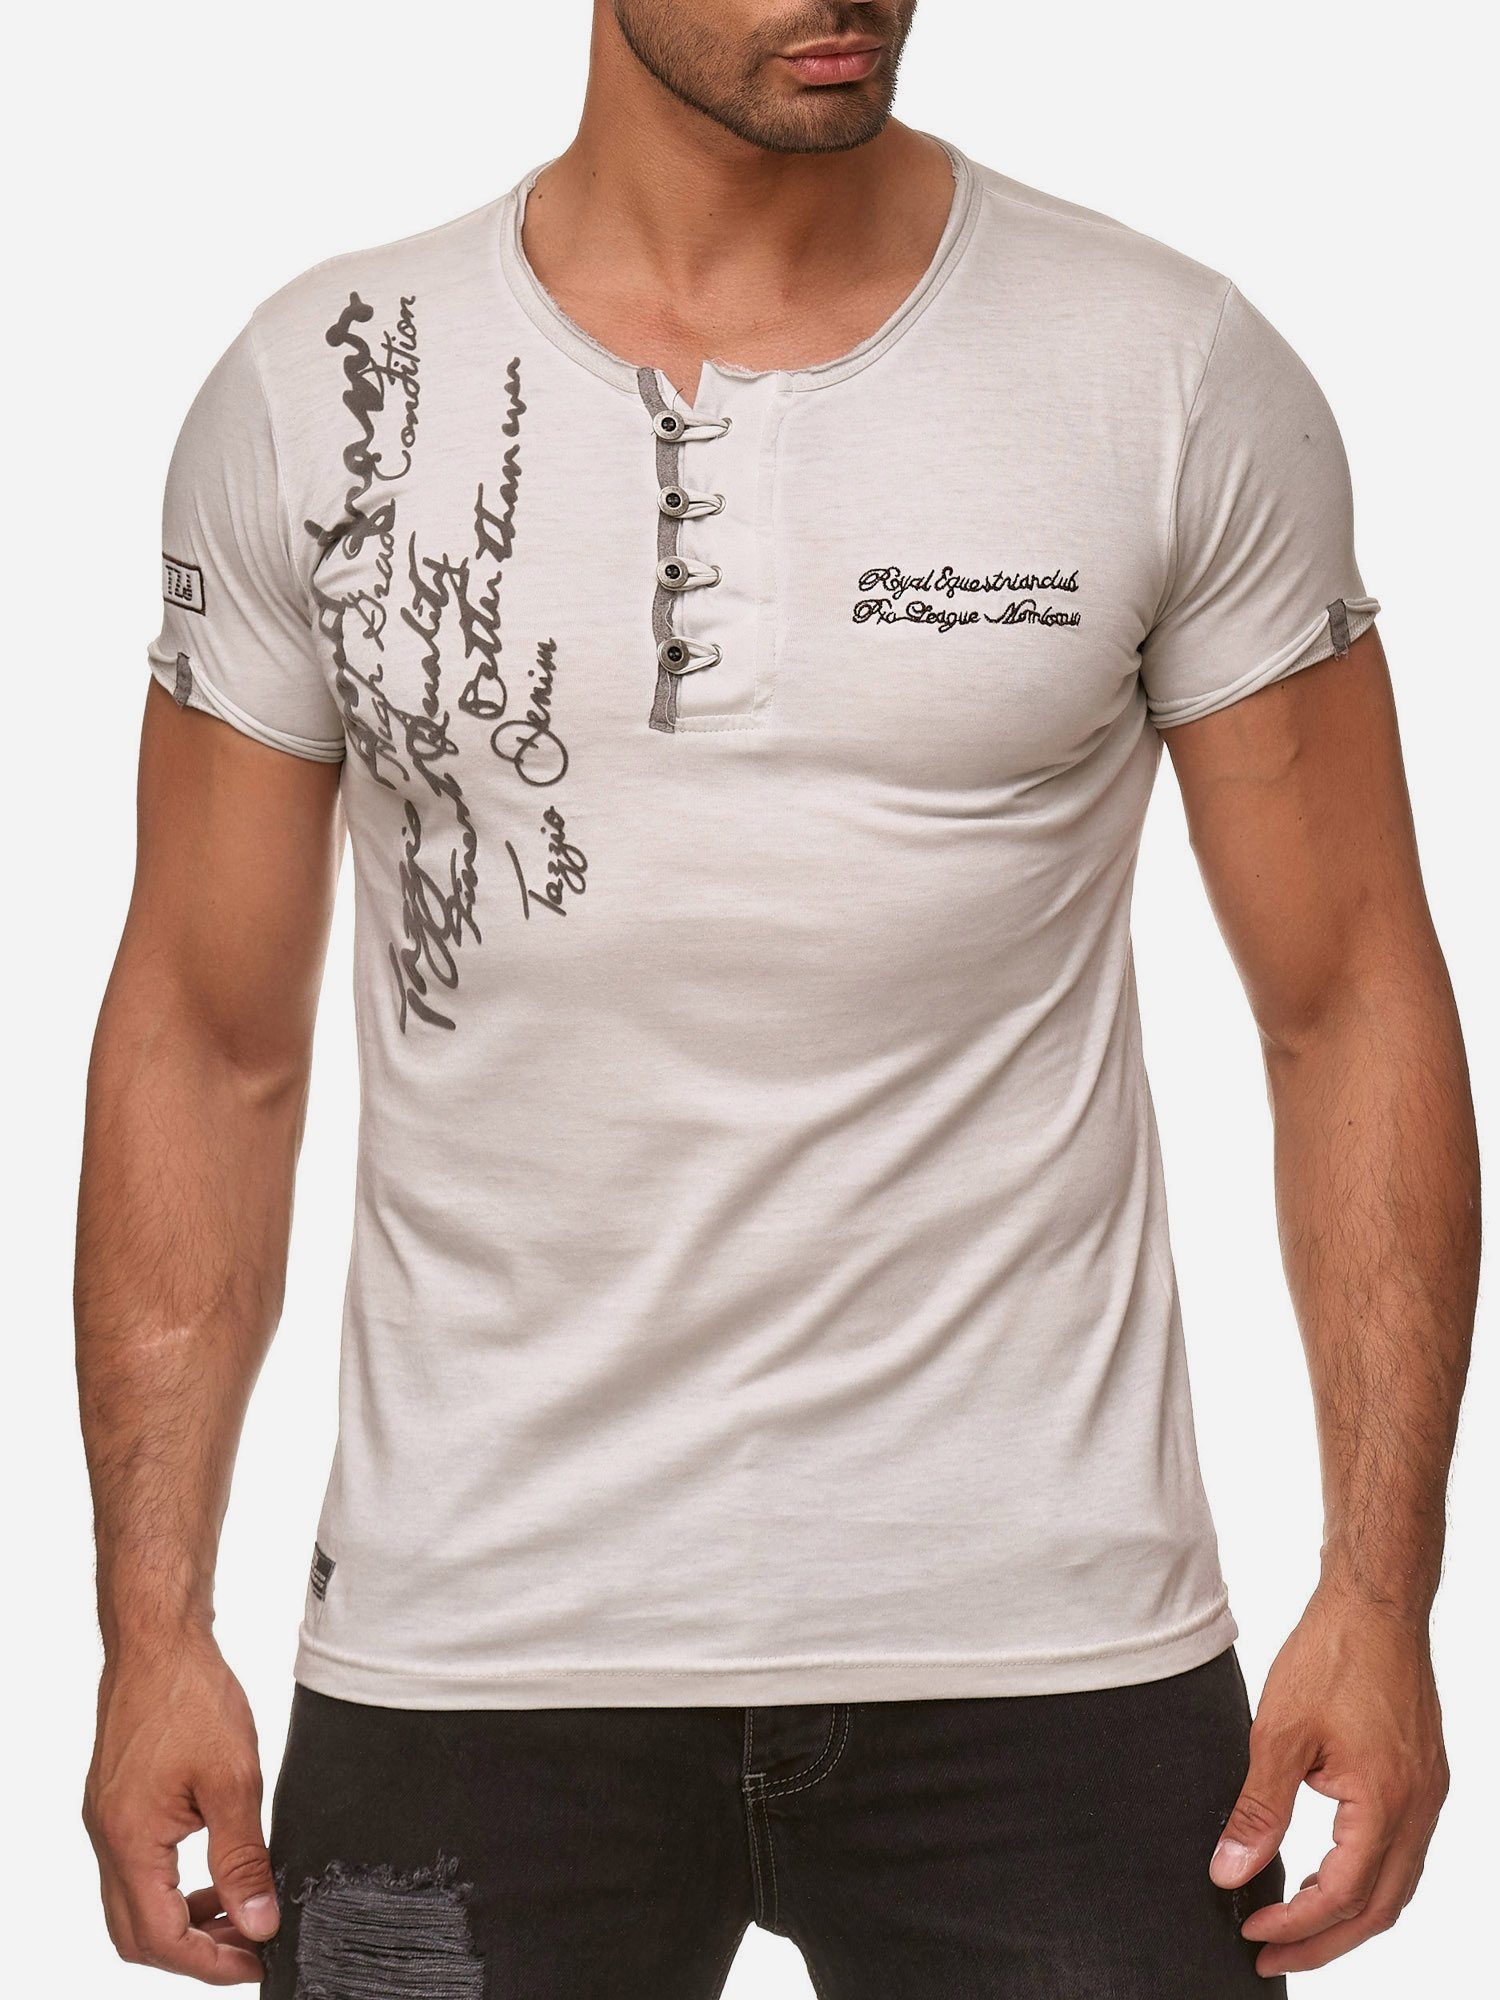 Tazzio T-Shirt 4050-1 Rundhalsshirt in Ölwaschung mit offenem Kragen und dezentem Used Look grau